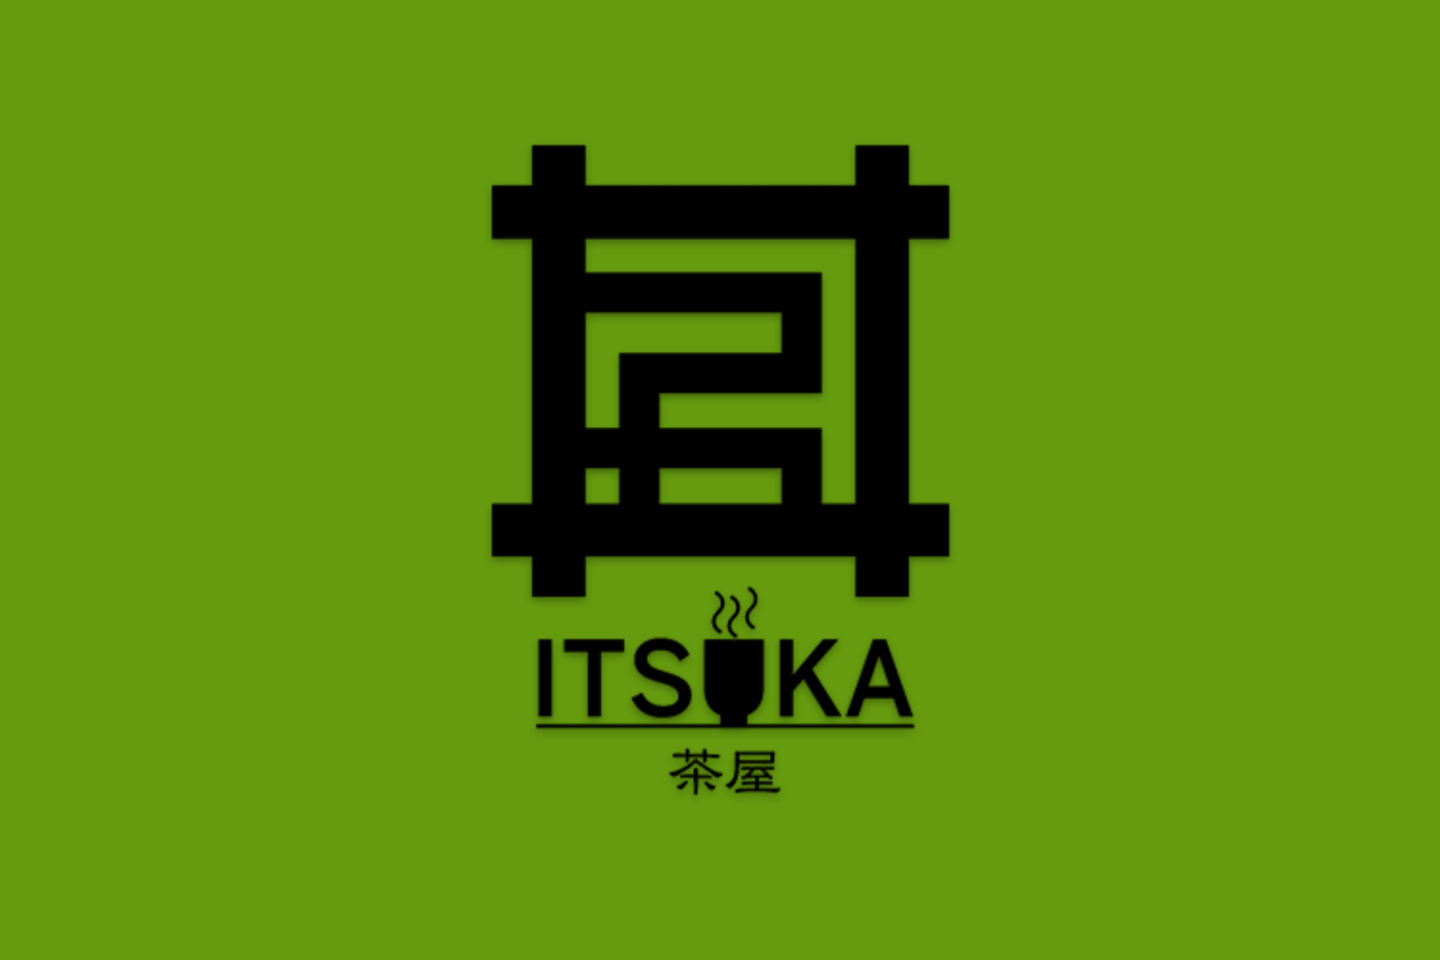 茶屋ITSUKA rogo